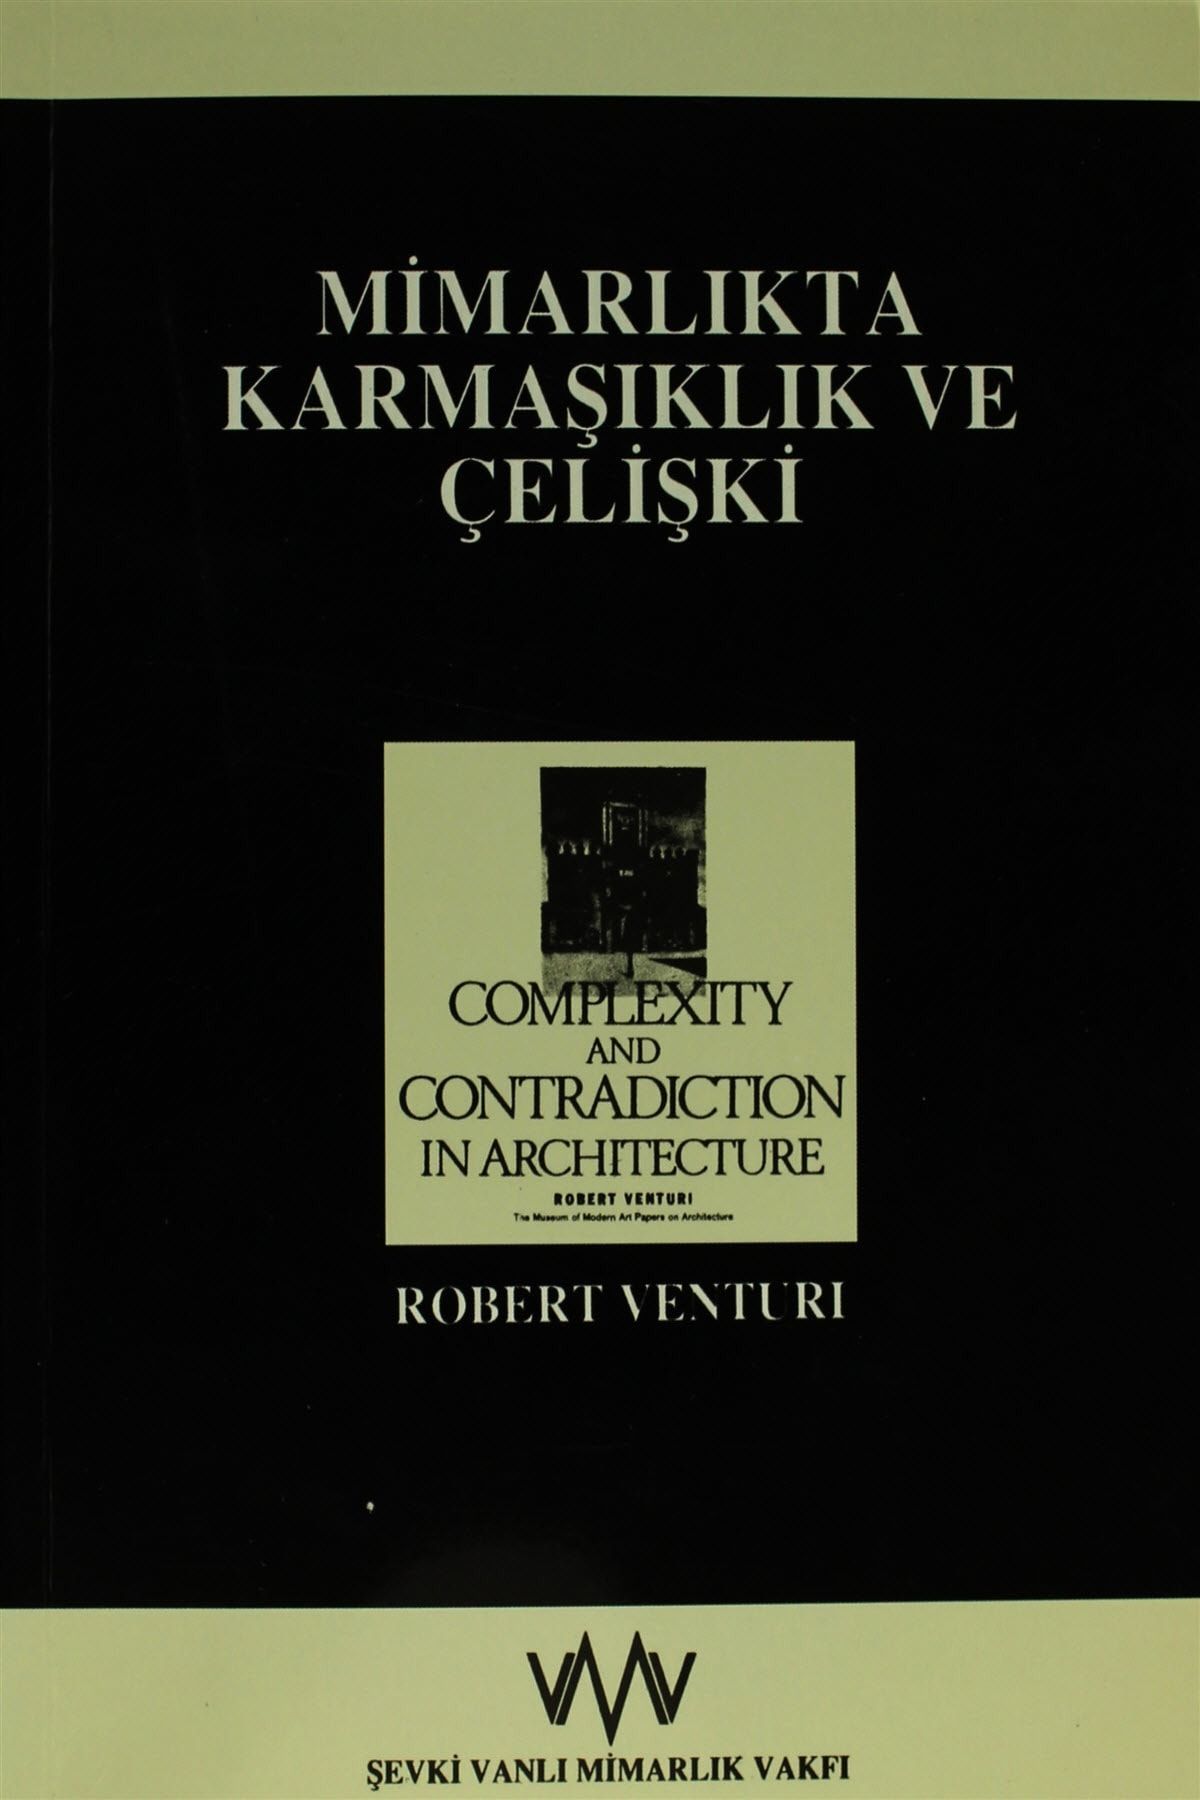 Şevki Vanlı Mimarlık Vakfı Yayınları Mimarlıkta Karmaşıklık ve Çelişki - Robert Venturi